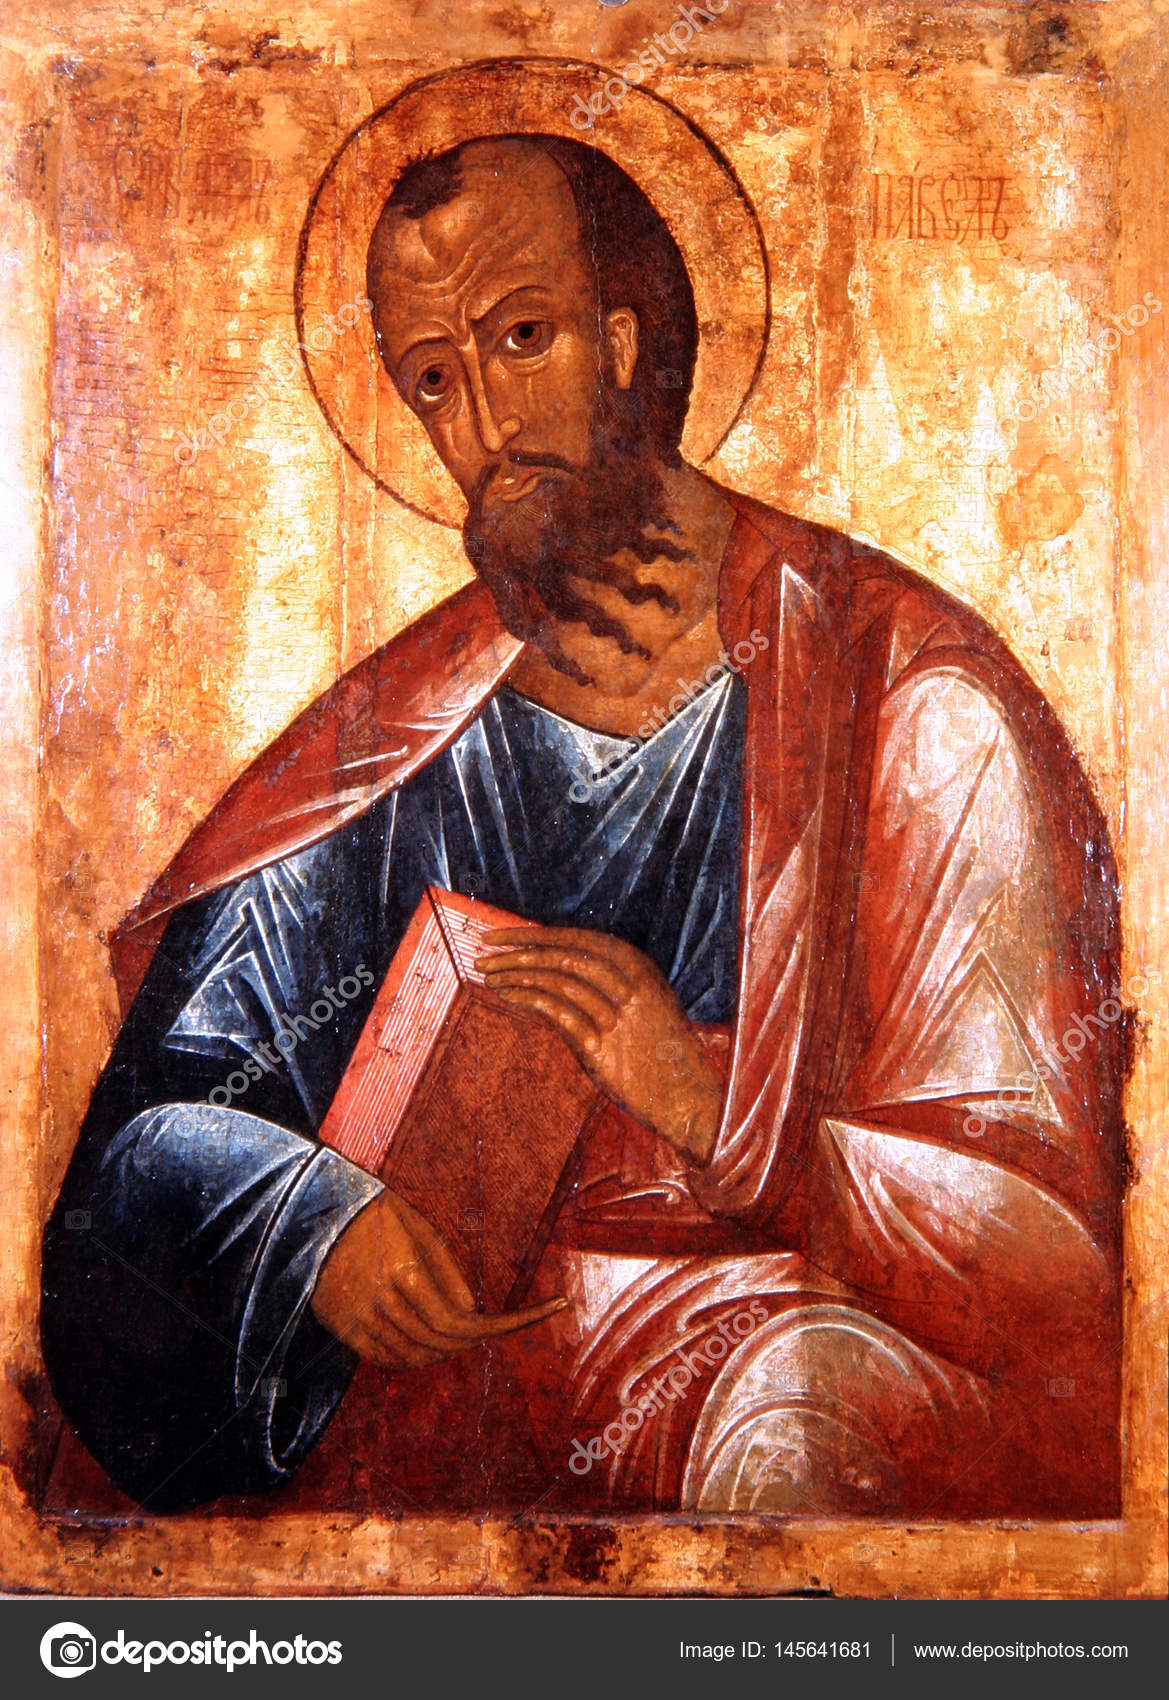 depositphotos_145641681-stock-photo-icon-of-the-apostle-paul